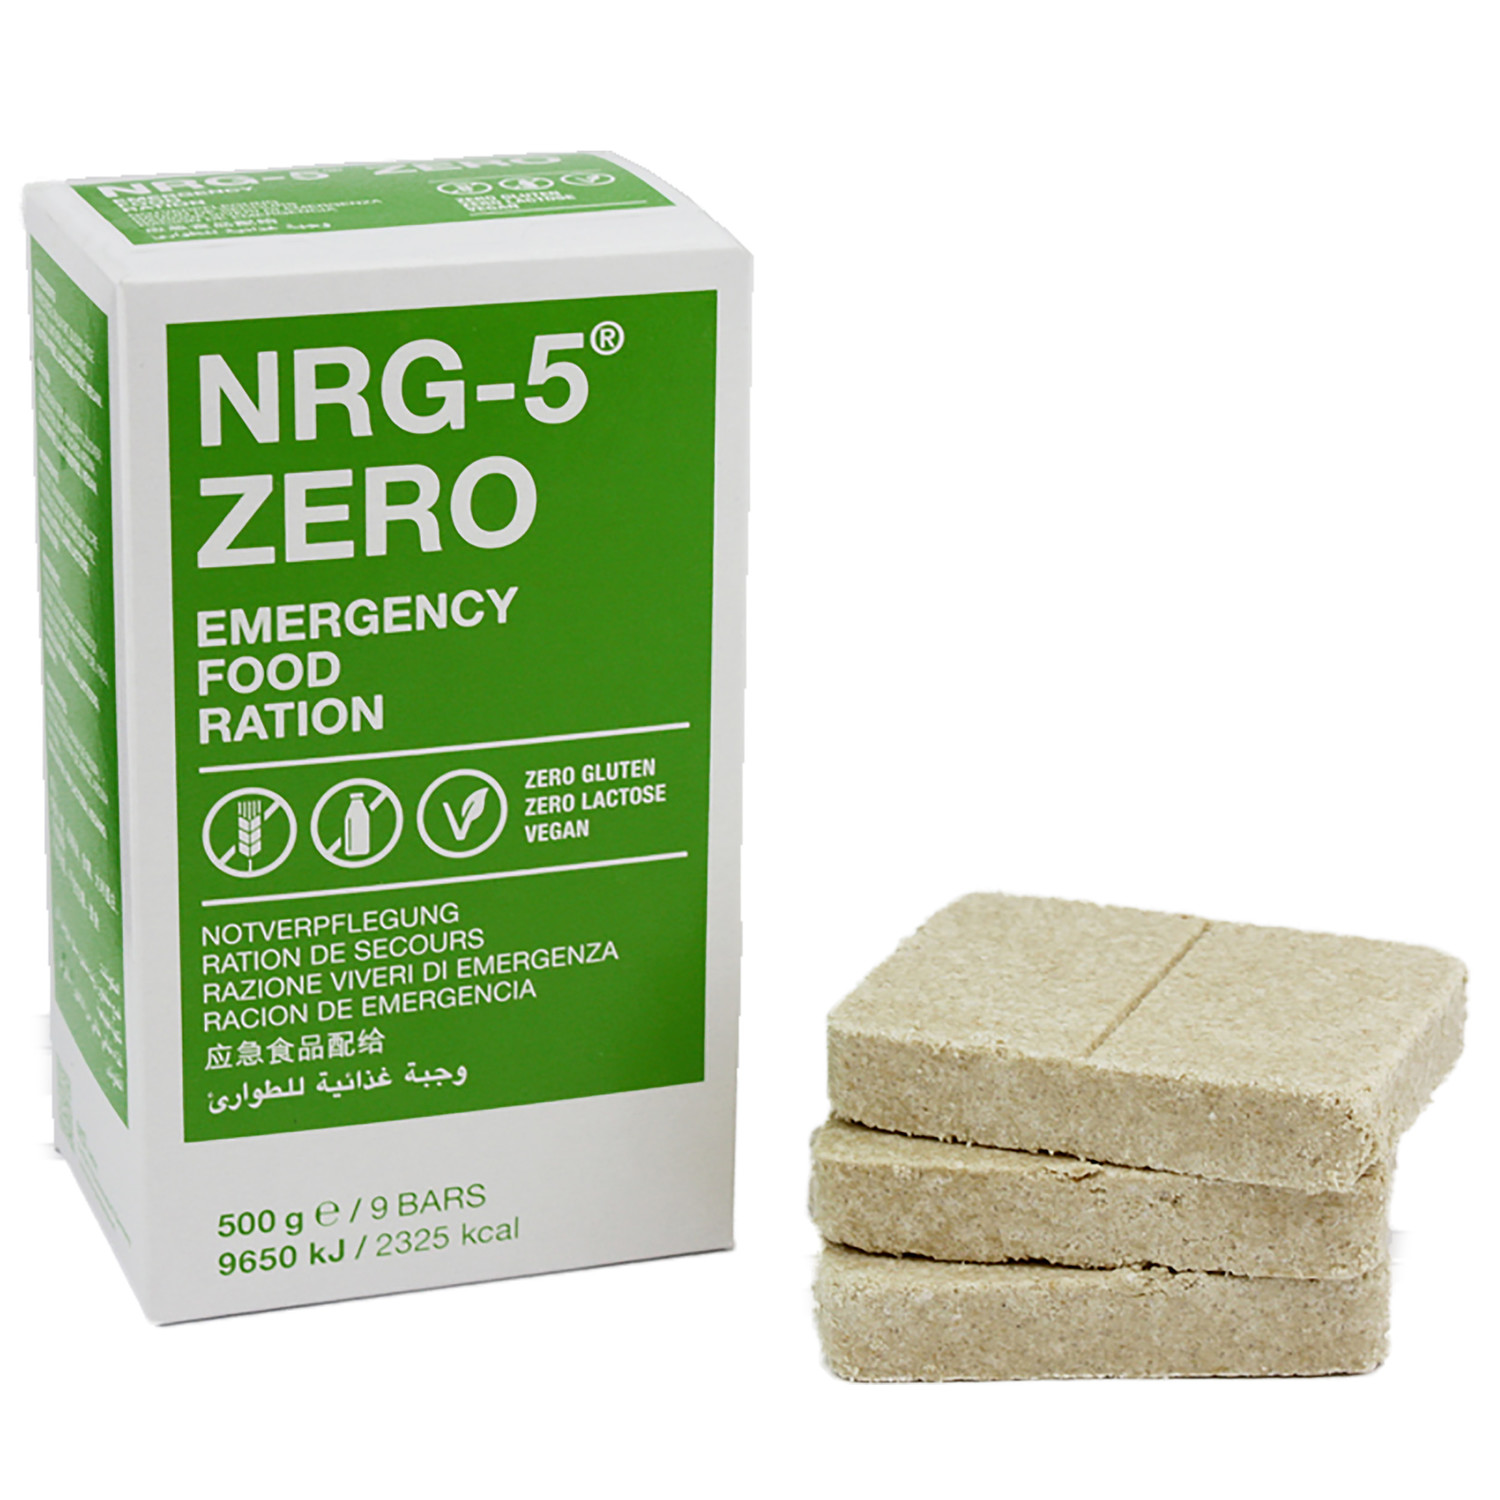 NRG-5 ZERO Notverpflegung 500 g, eine Packung